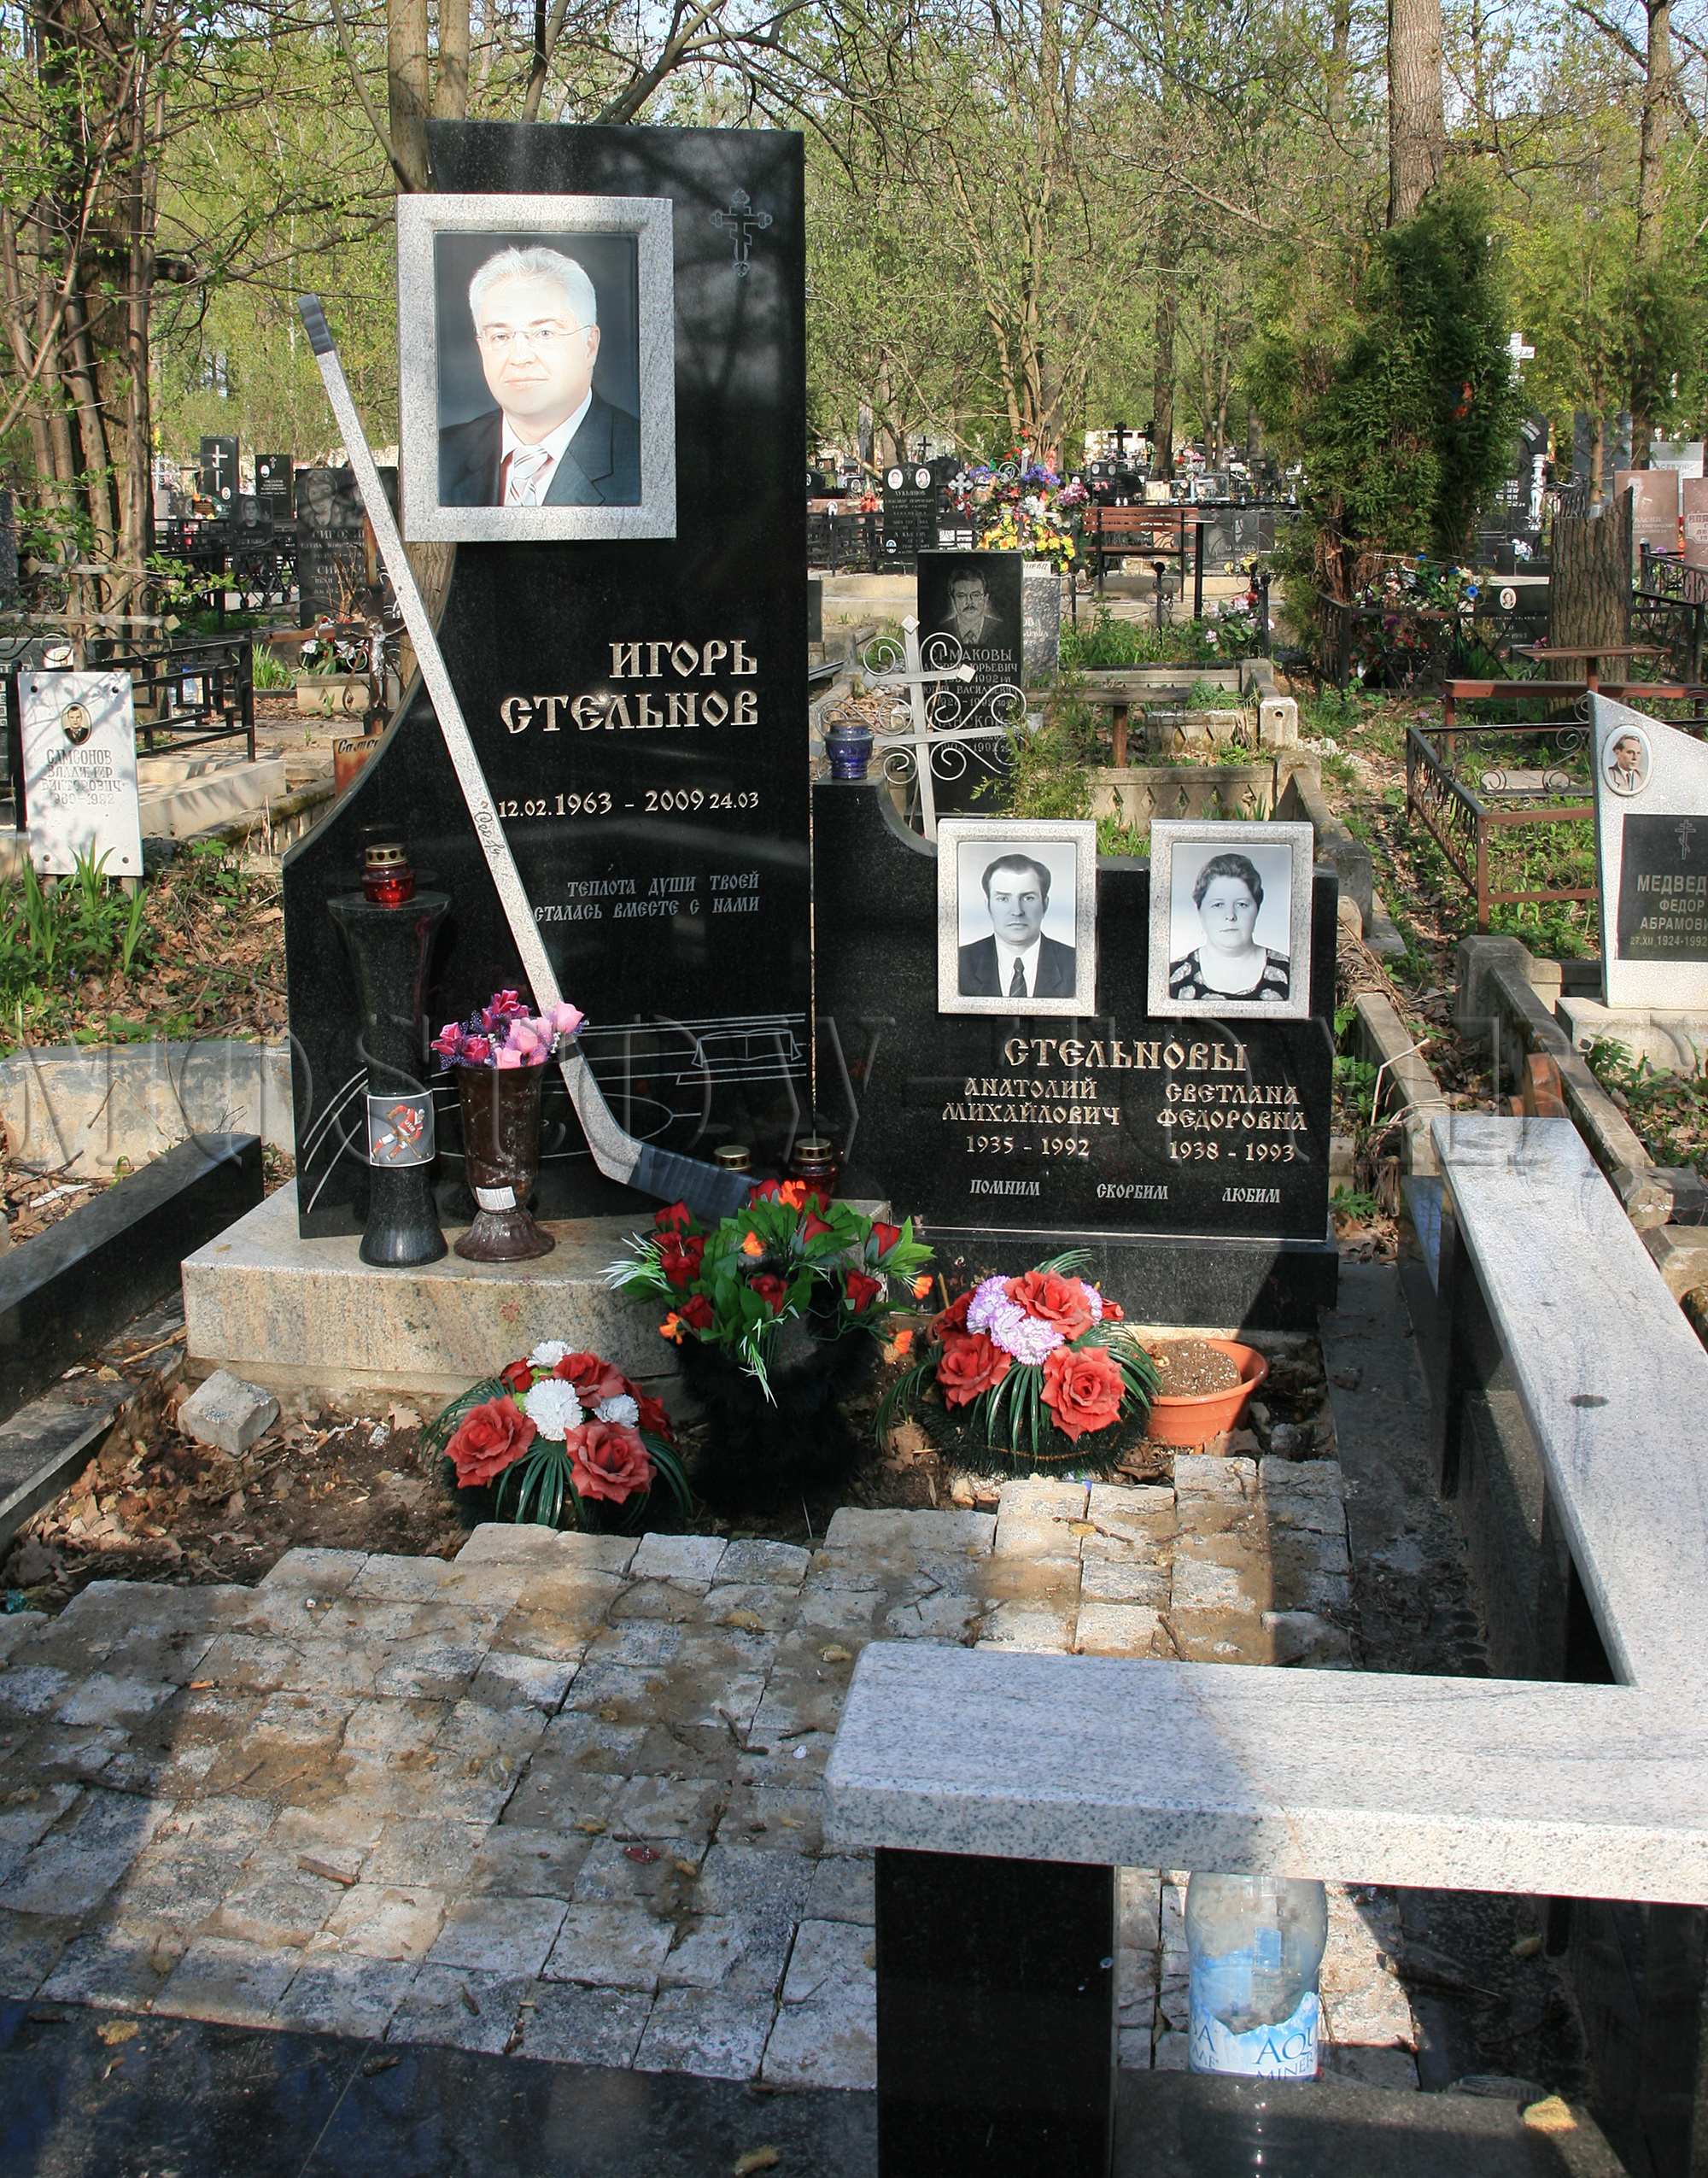 Памятник Игорю Стельнову